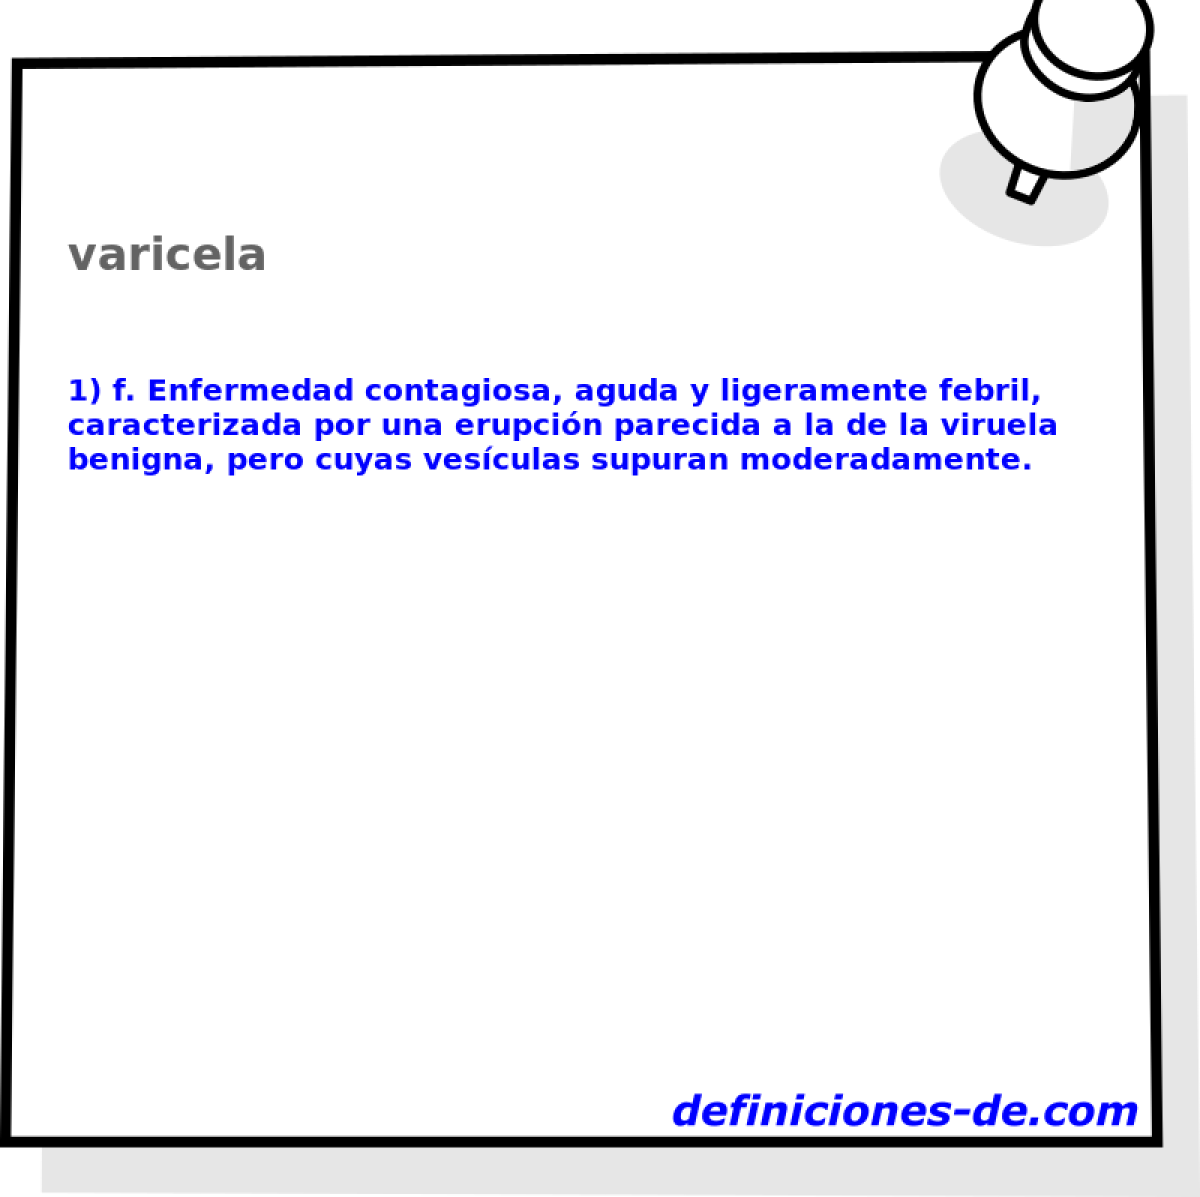 varicela 